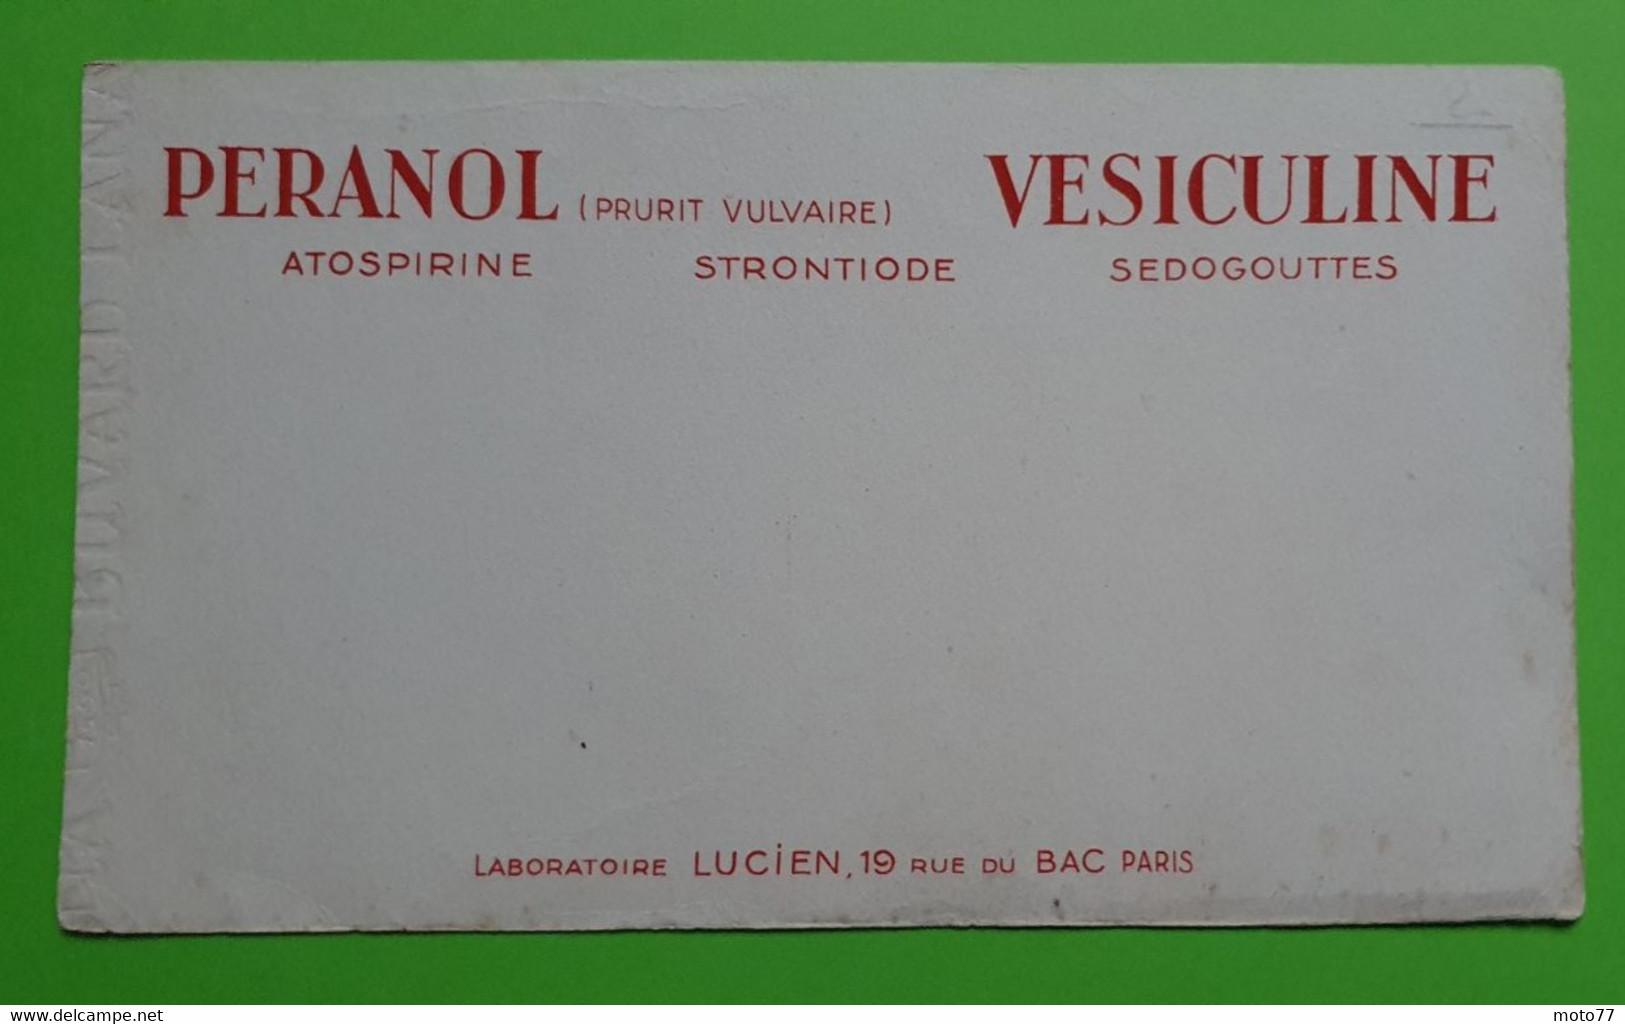 Buvard 966 - Laboratoire Lucien - PERANOL VESICULINE - Etat D'usage : Voir Photos- 21x12 Cm Environ - Vers 1950 - Produits Pharmaceutiques